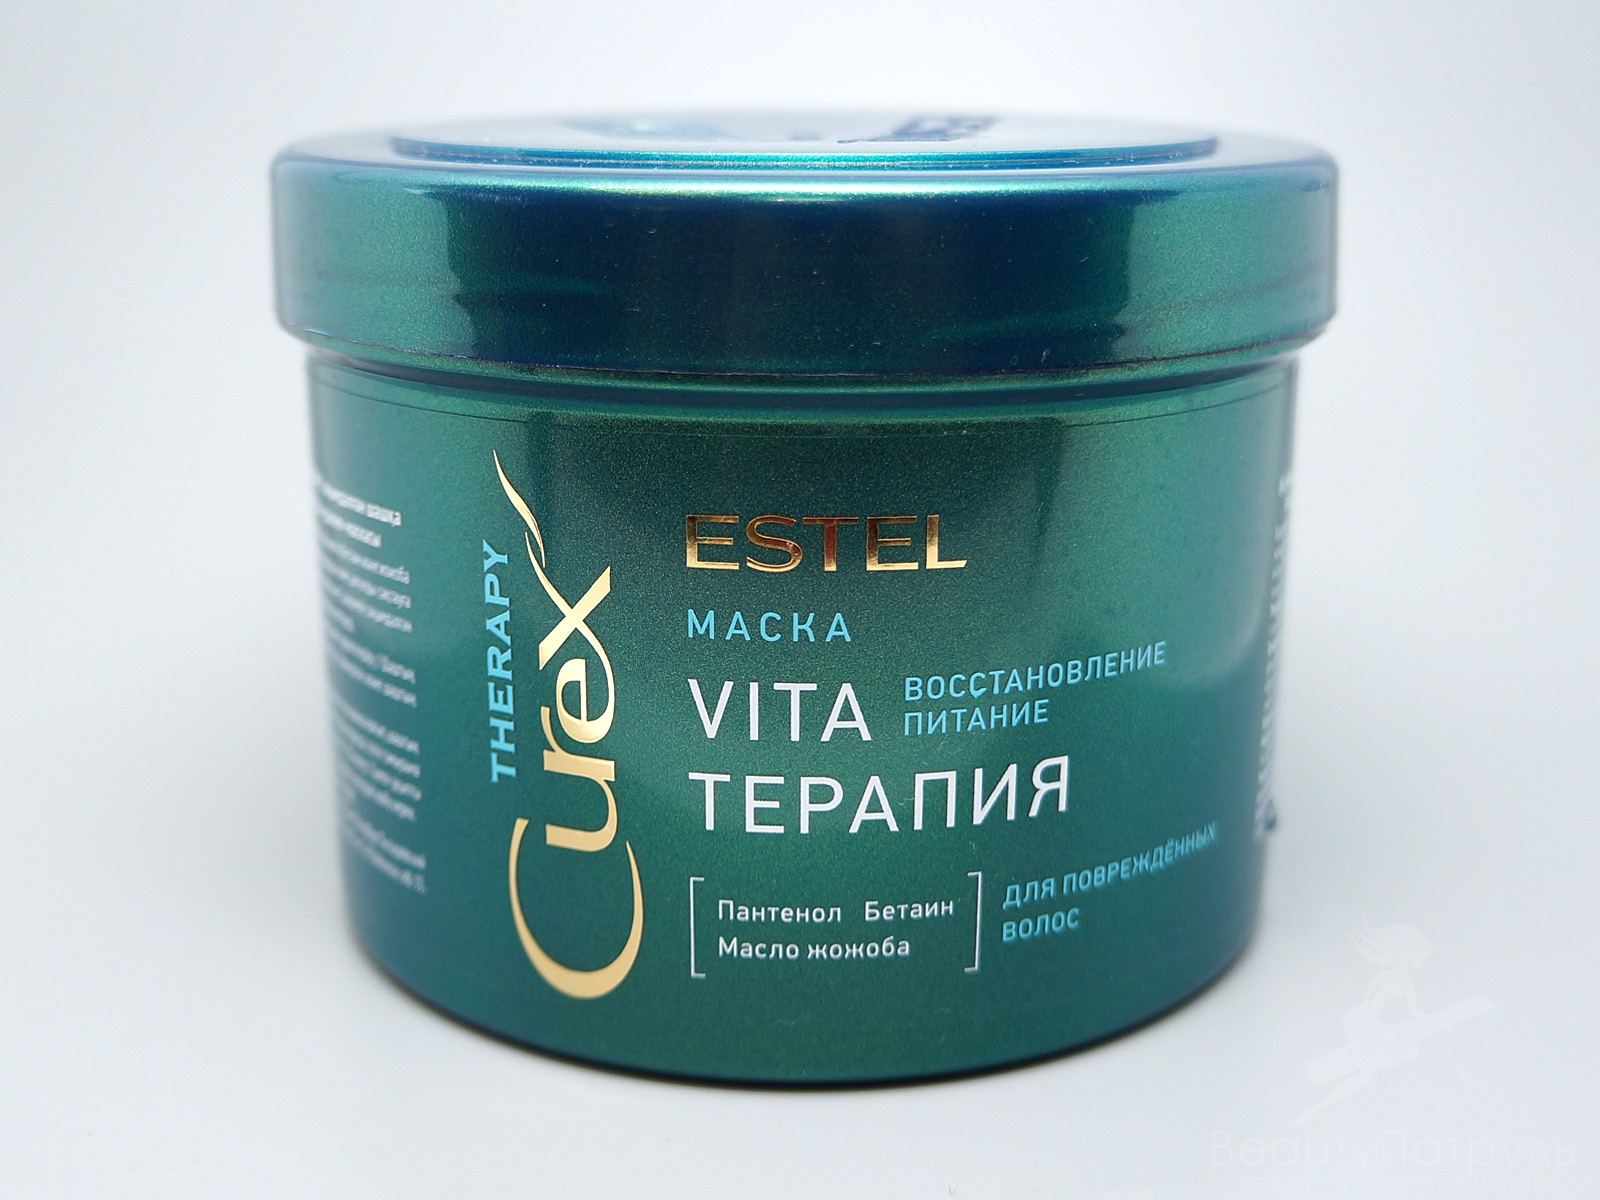 Маска терапия для волос. Estel Curex маска Vita маска терапия. Маска для волос Estel Vita терапия.